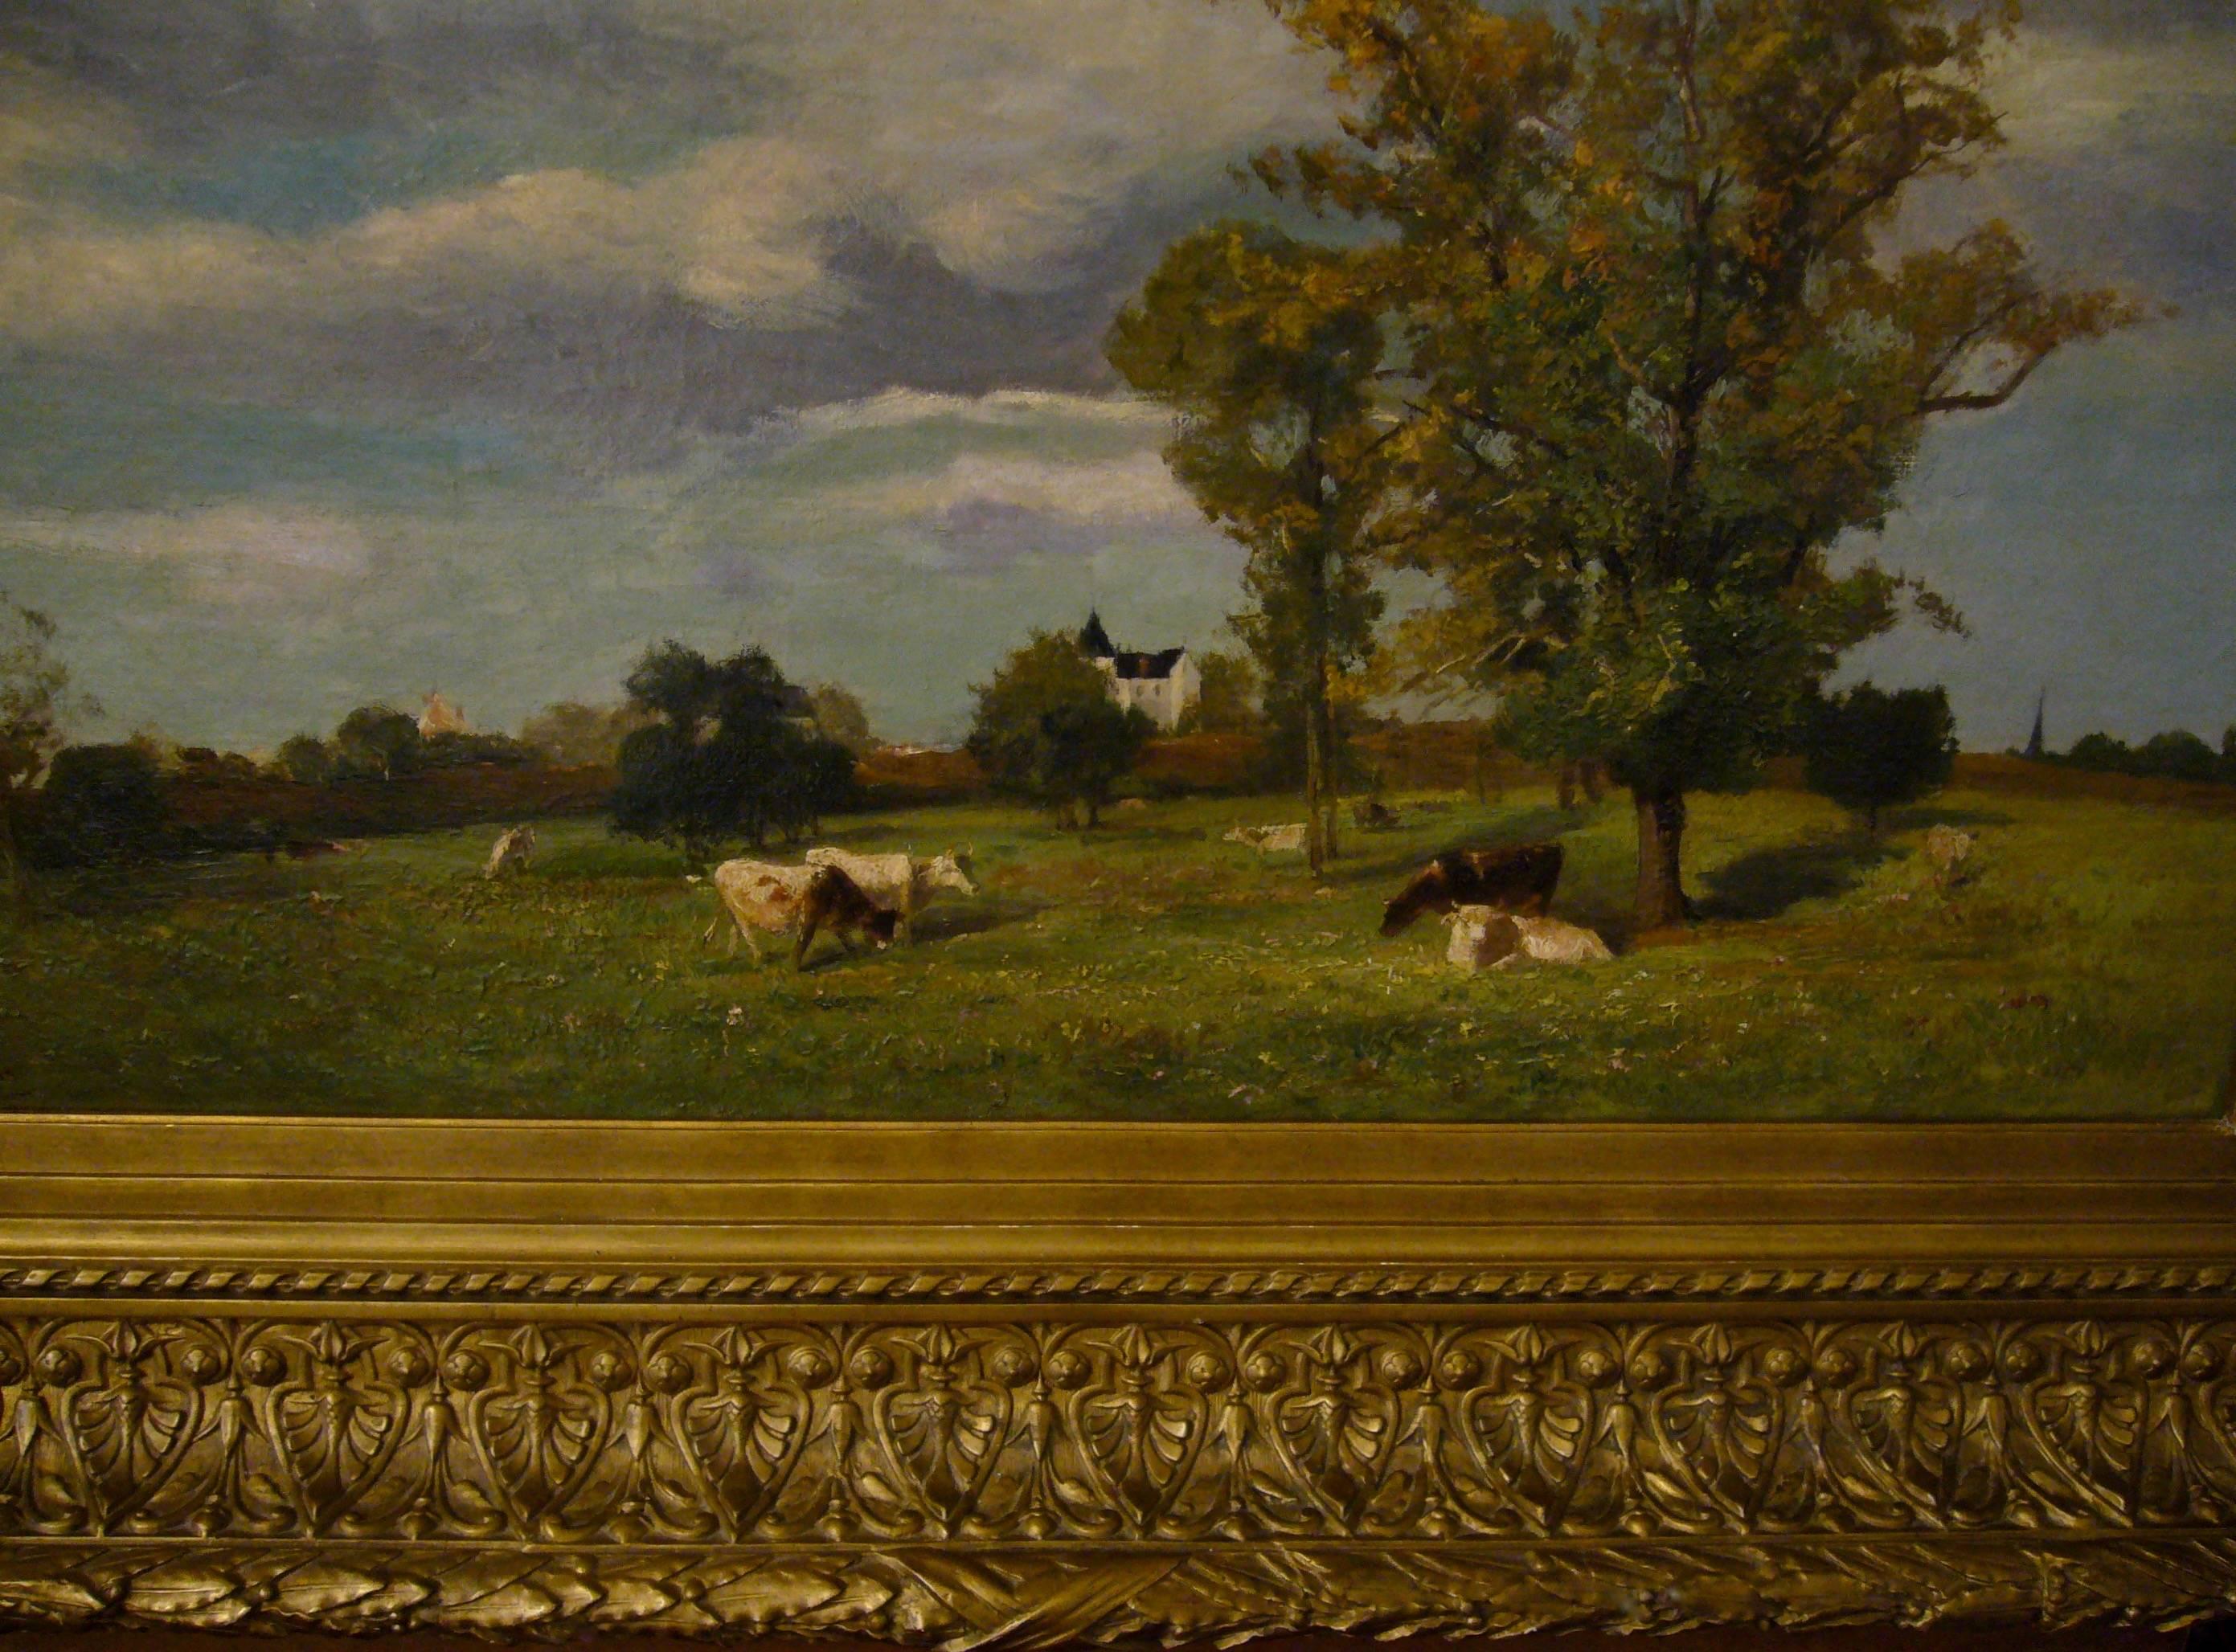 Vaches dans un paysage de printemps près d'un chateau - Barbizon School Painting by Jacques Alfred Brielman